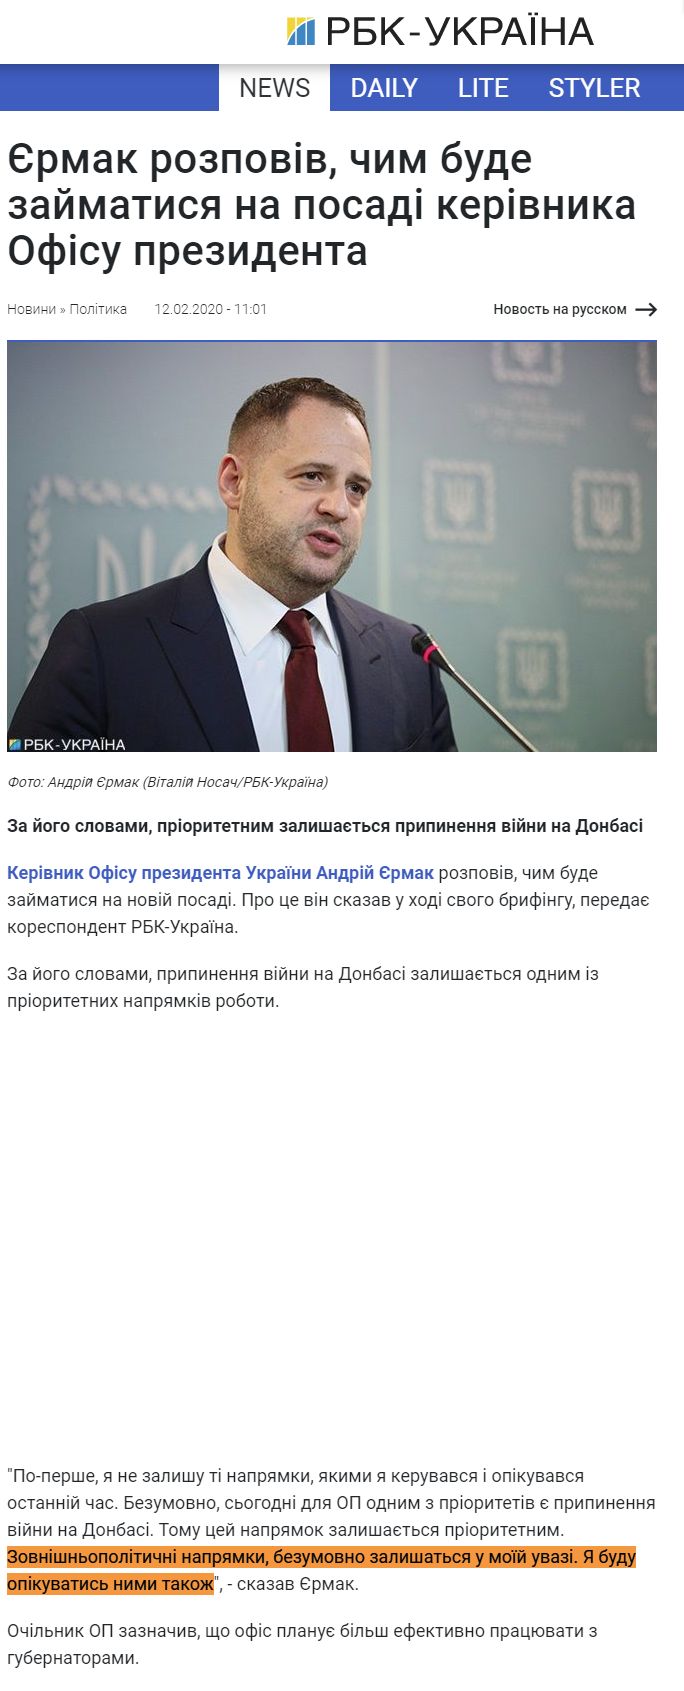 https://www.rbc.ua/ukr/news/ermak-rasskazal-budet-zanimatsya-dolzhnosti-1581498032.html